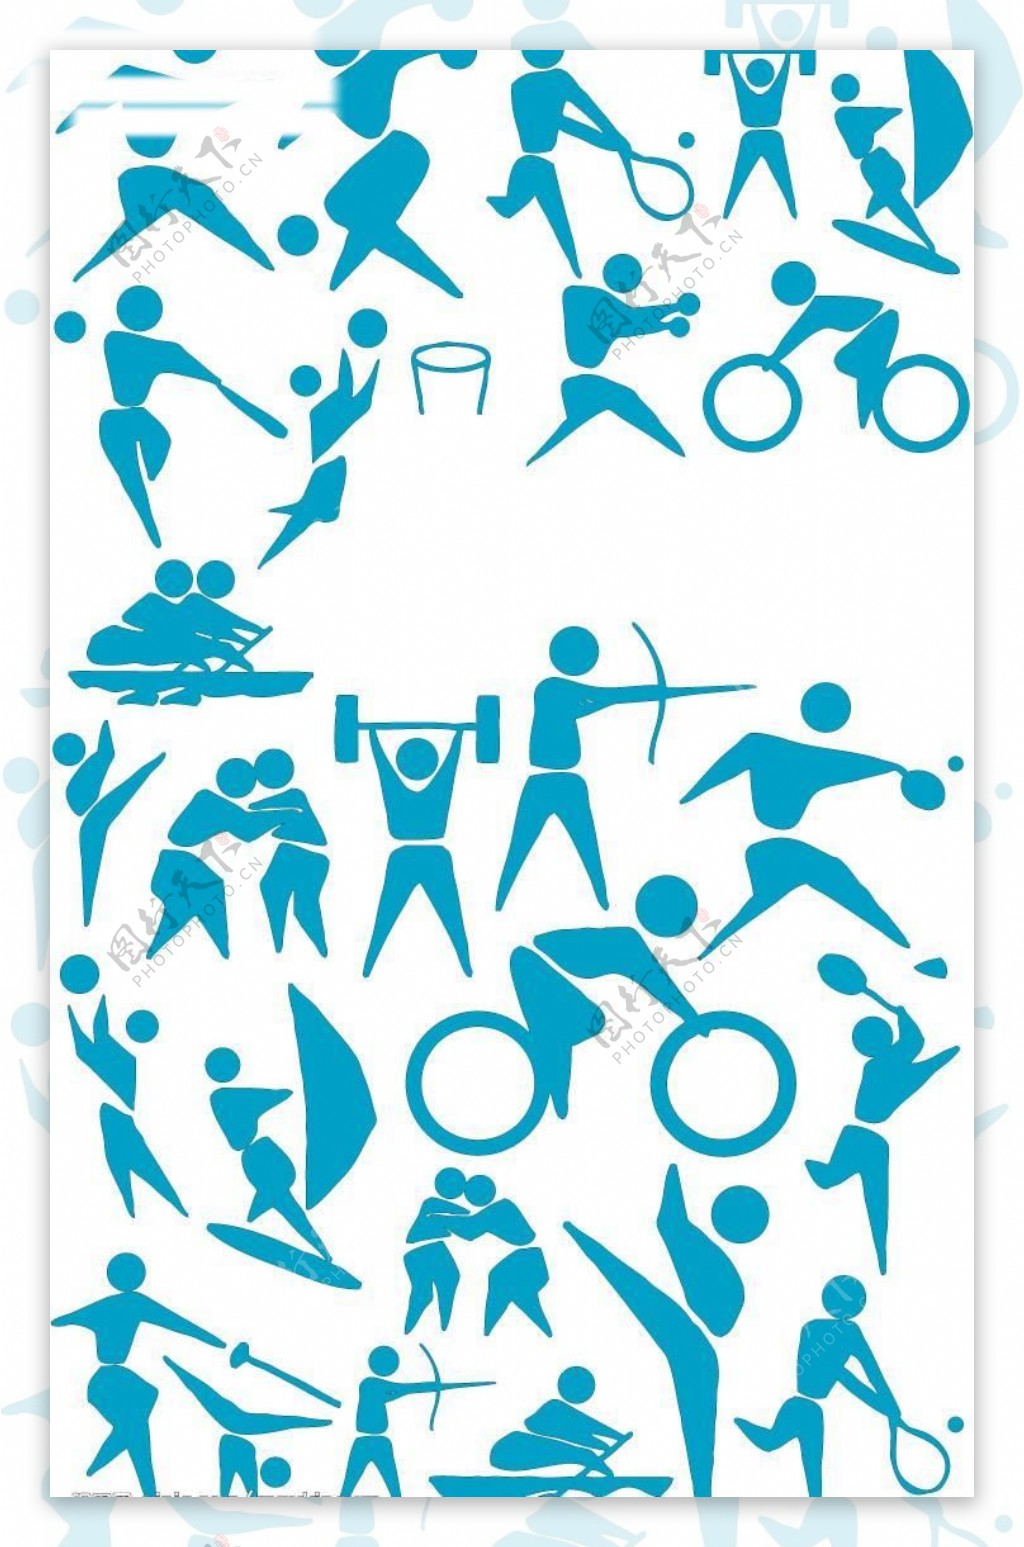 奥运体育比赛项目标识图标图片